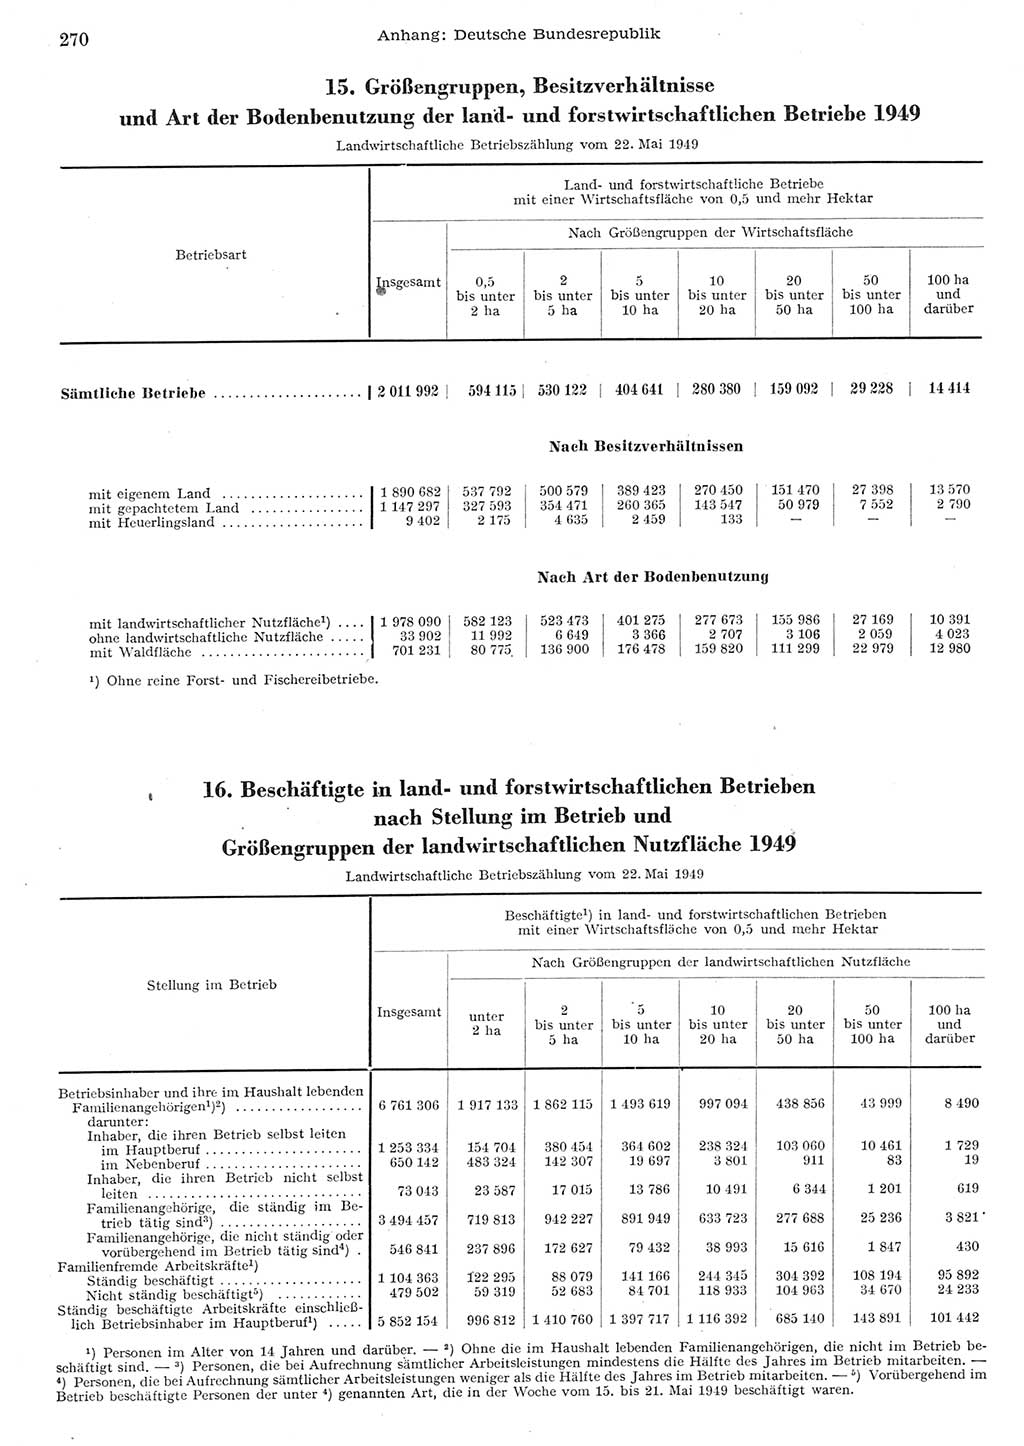 Statistisches Jahrbuch der Deutschen Demokratischen Republik (DDR) 1955, Seite 270 (Stat. Jb. DDR 1955, S. 270)